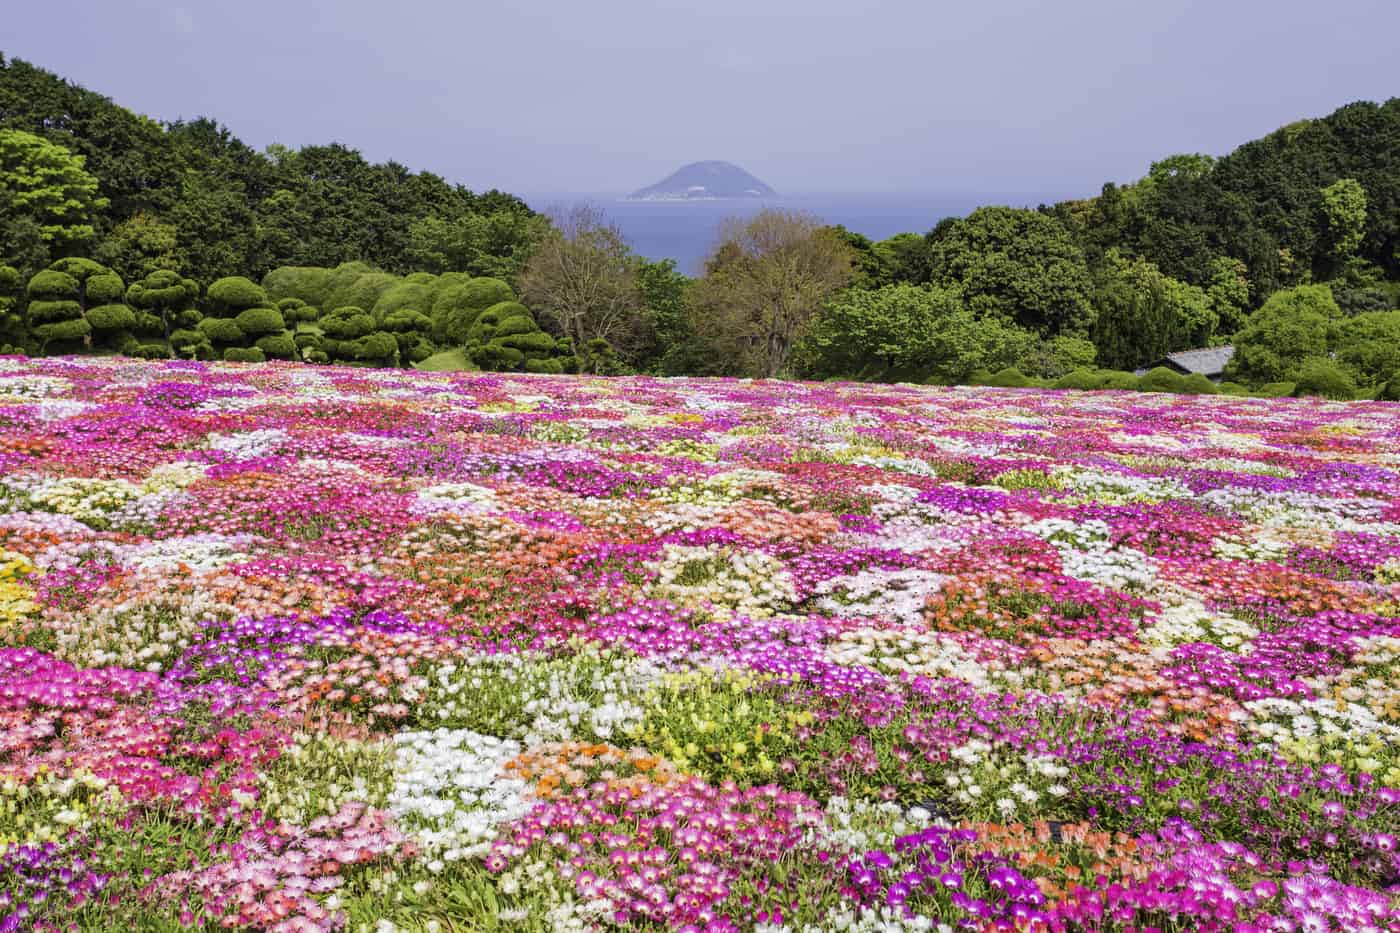 เกาะโนโคโนะชิมะ (Nokonoshima Island) ที่มีทุ่งดอกไม้สวยงาม อยู่ใกล้ตัวเมือง